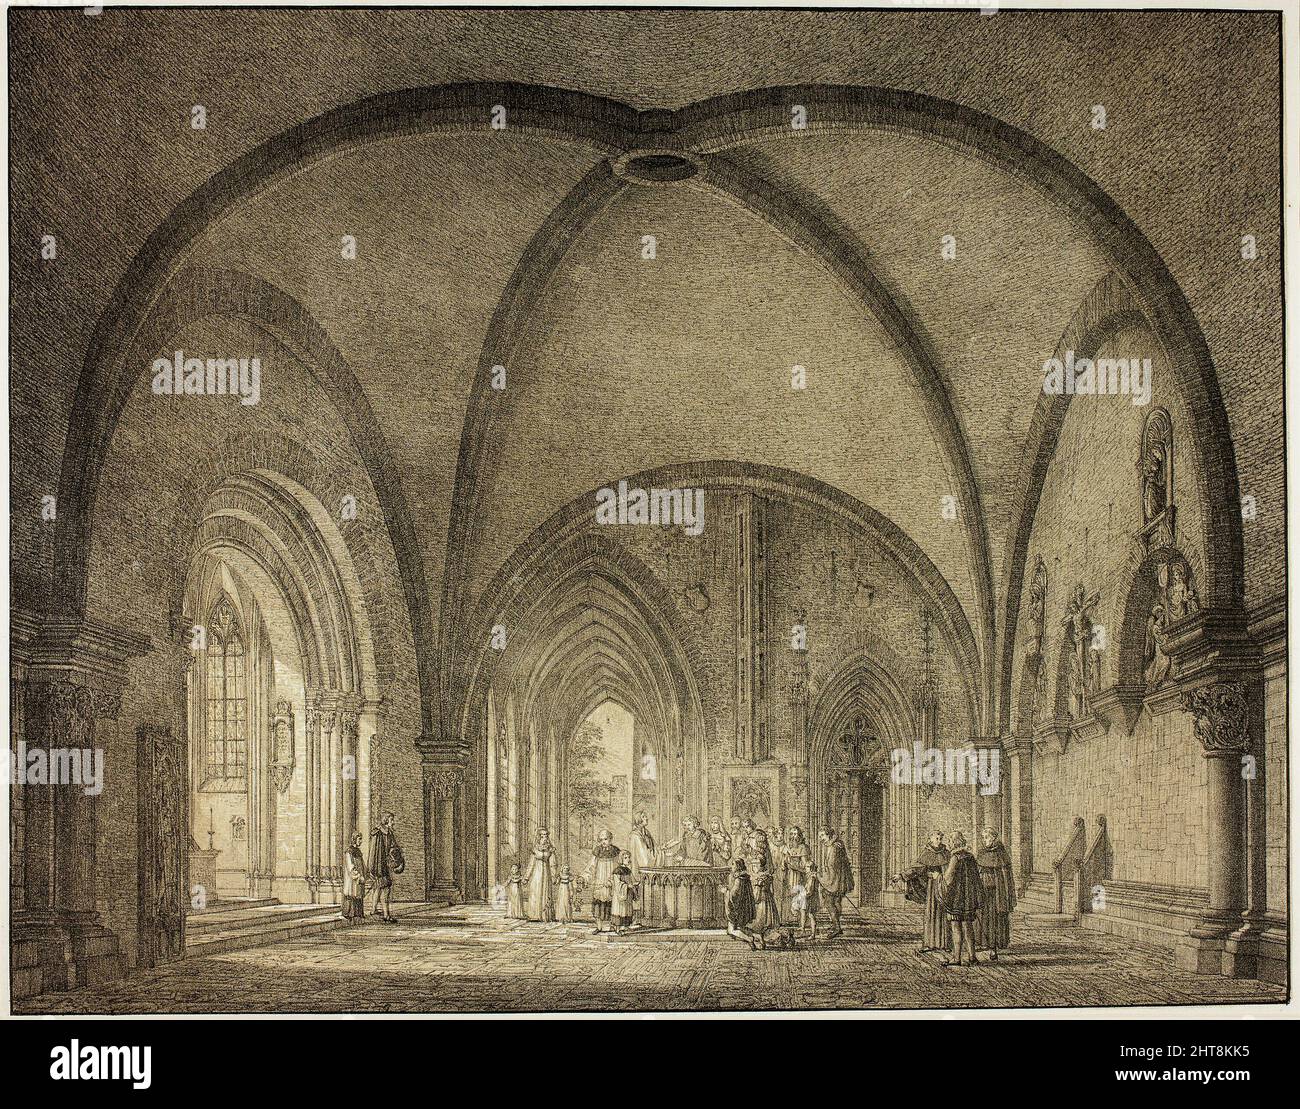 Taufsaal und Kreuzgänge im Mainzer Dom, aus der Sammlung denkwürdiger mittelalterlicher Bauten in Deutschland, 1823. Stockfoto